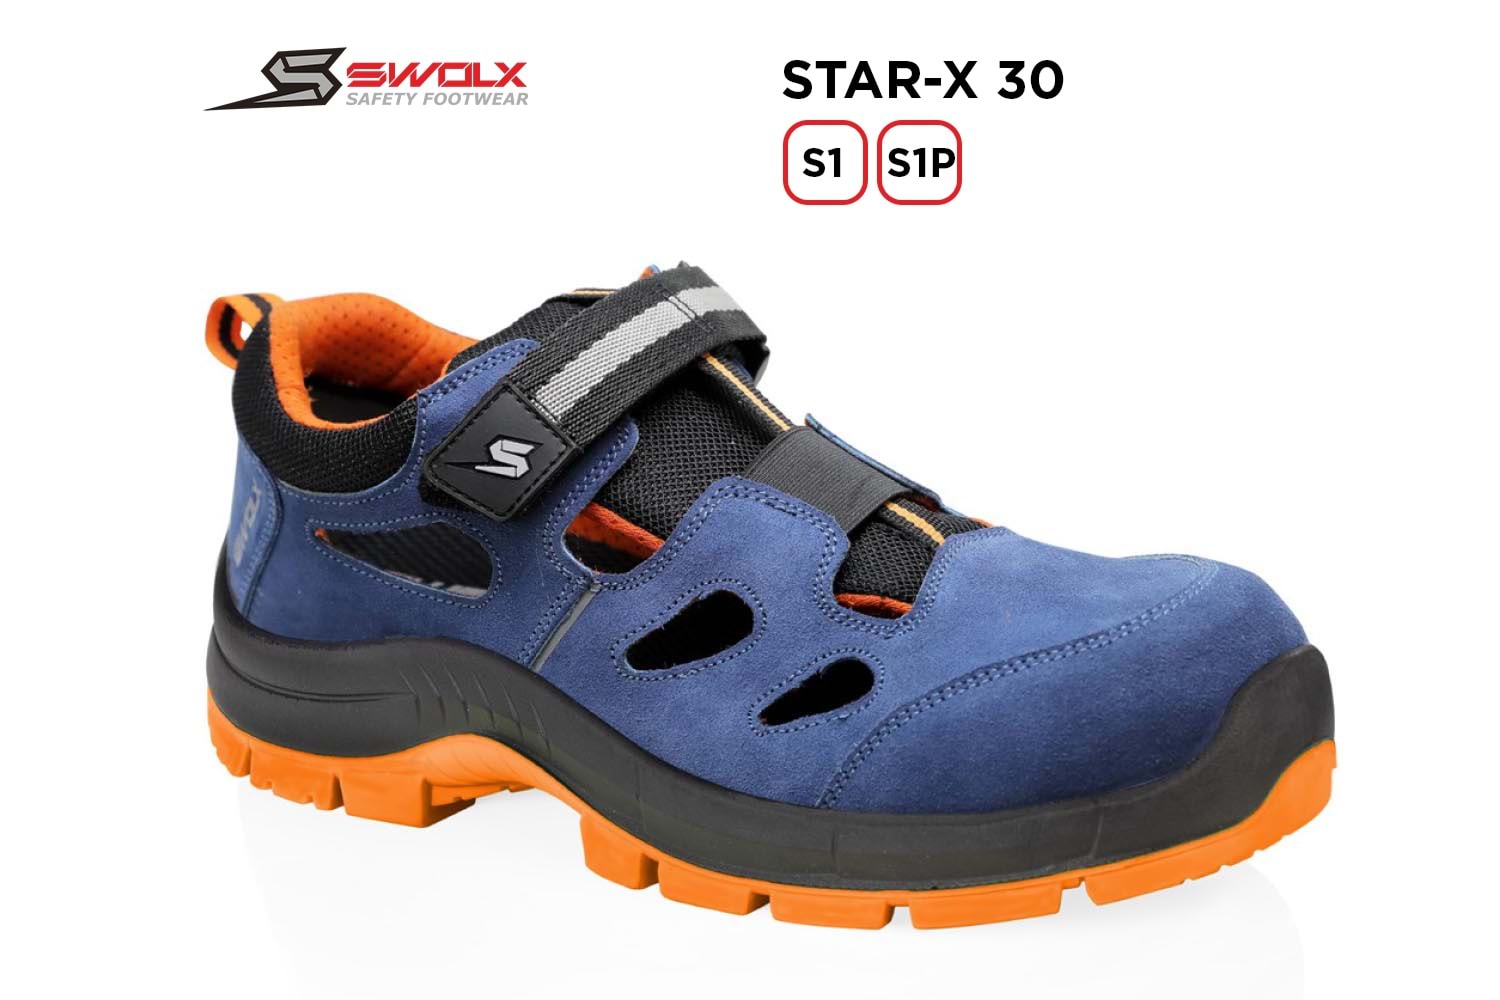 Swolx İş Ayakkabısı - Star-X 30 S1P - 42